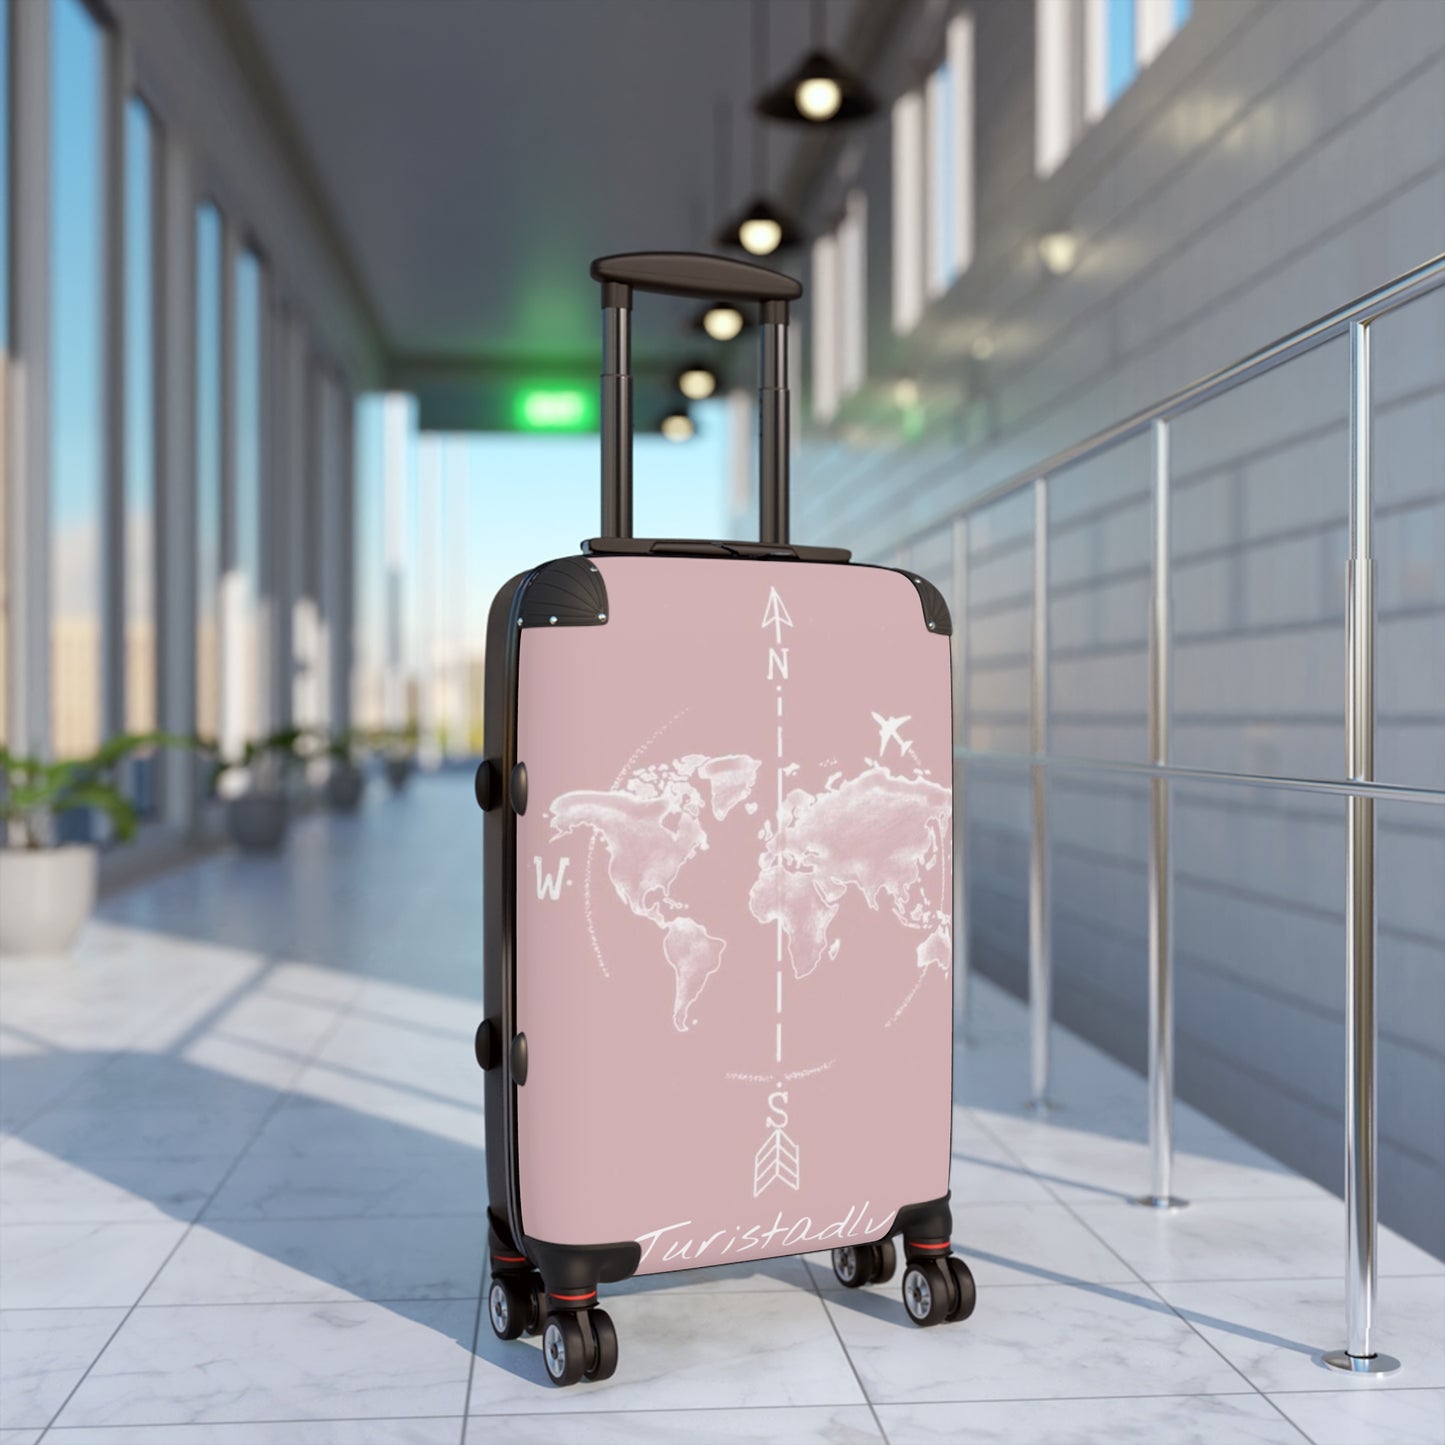 Maleta de viaje, equipaje, maleta de vacaciones, maleta de viajero, regalo viajero, regalo de viaje, trotamundos, vacaciones, aventurero.